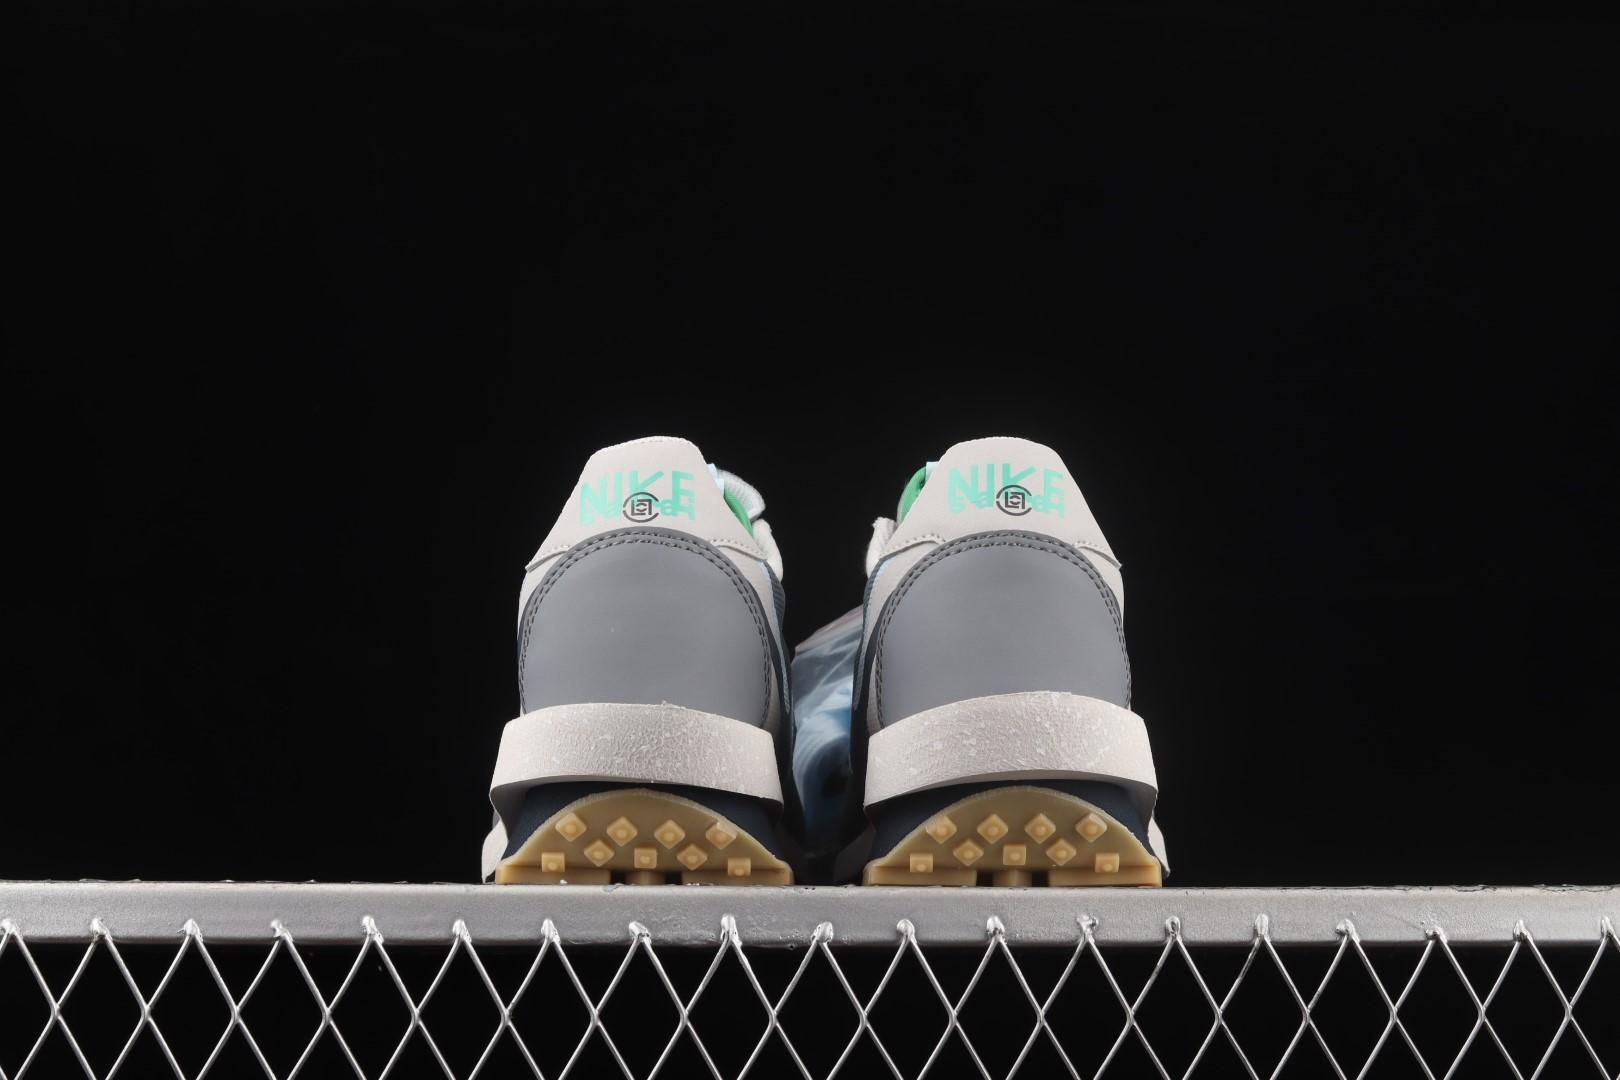 NikeMens LDWaffle x sacai x CLOT - Cool Grey